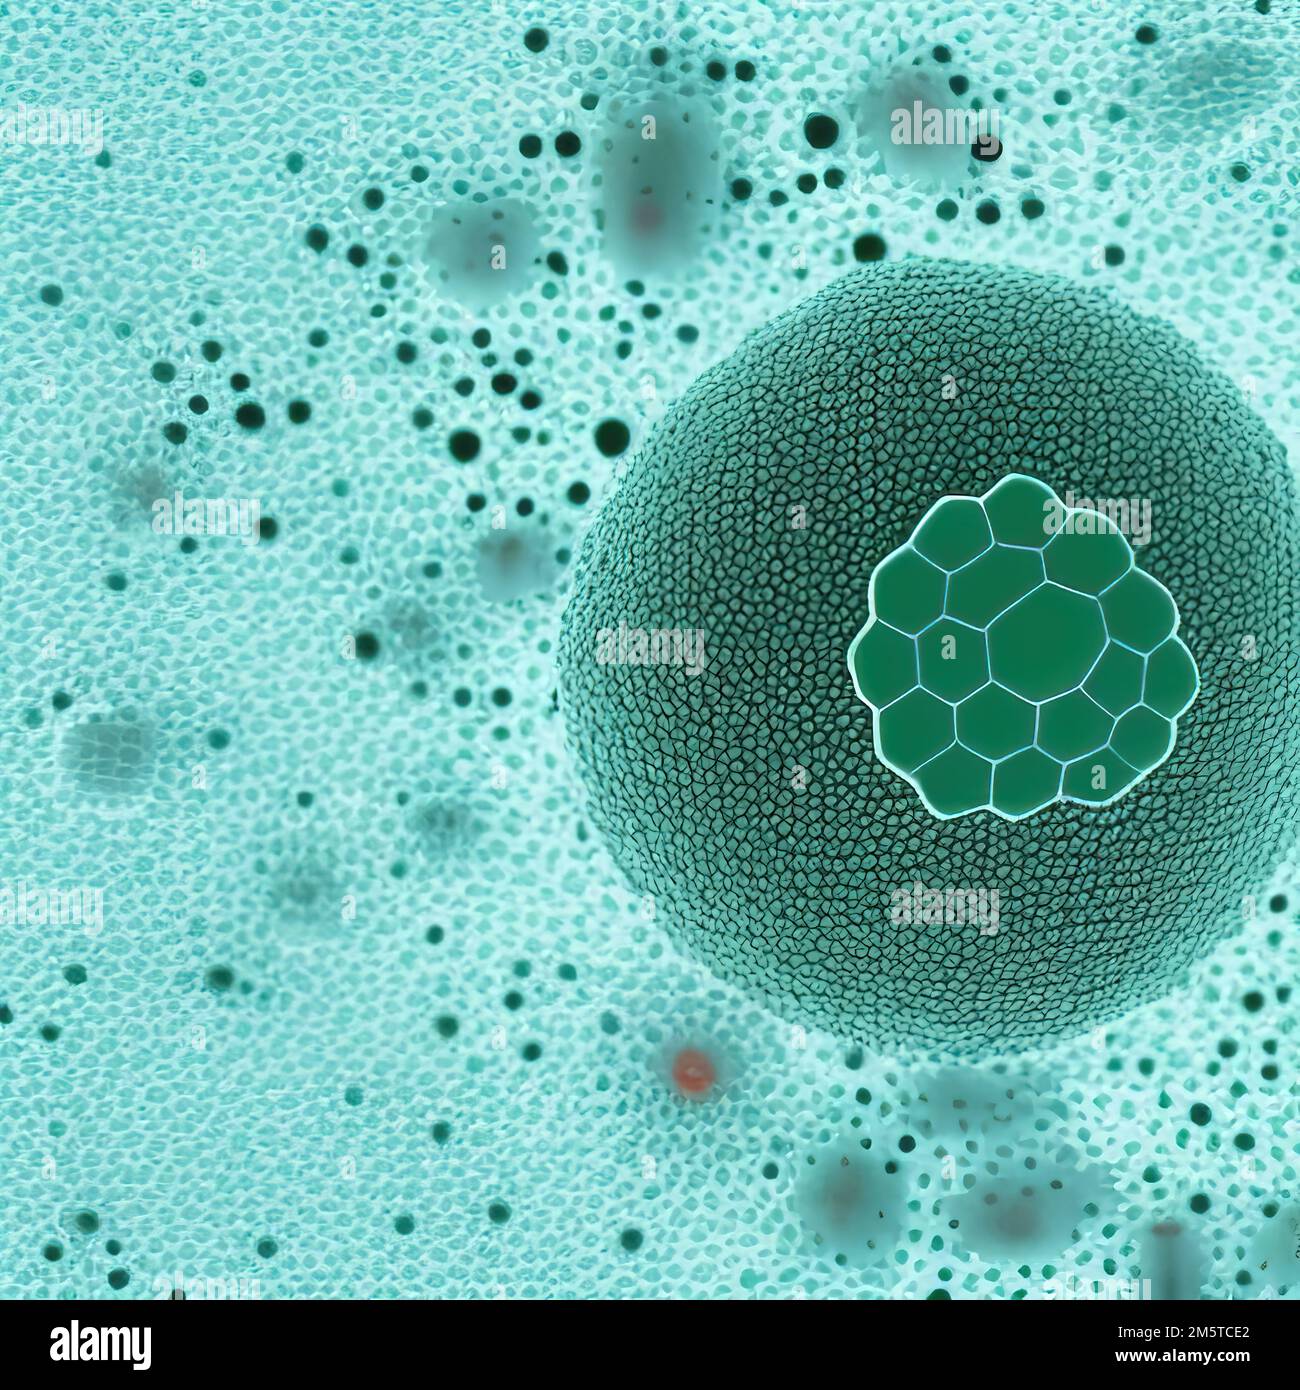 Résumé cellule pathogène du virus, cellule cancéreuse au microscope, tumeur maligne, illustration numérique Banque D'Images